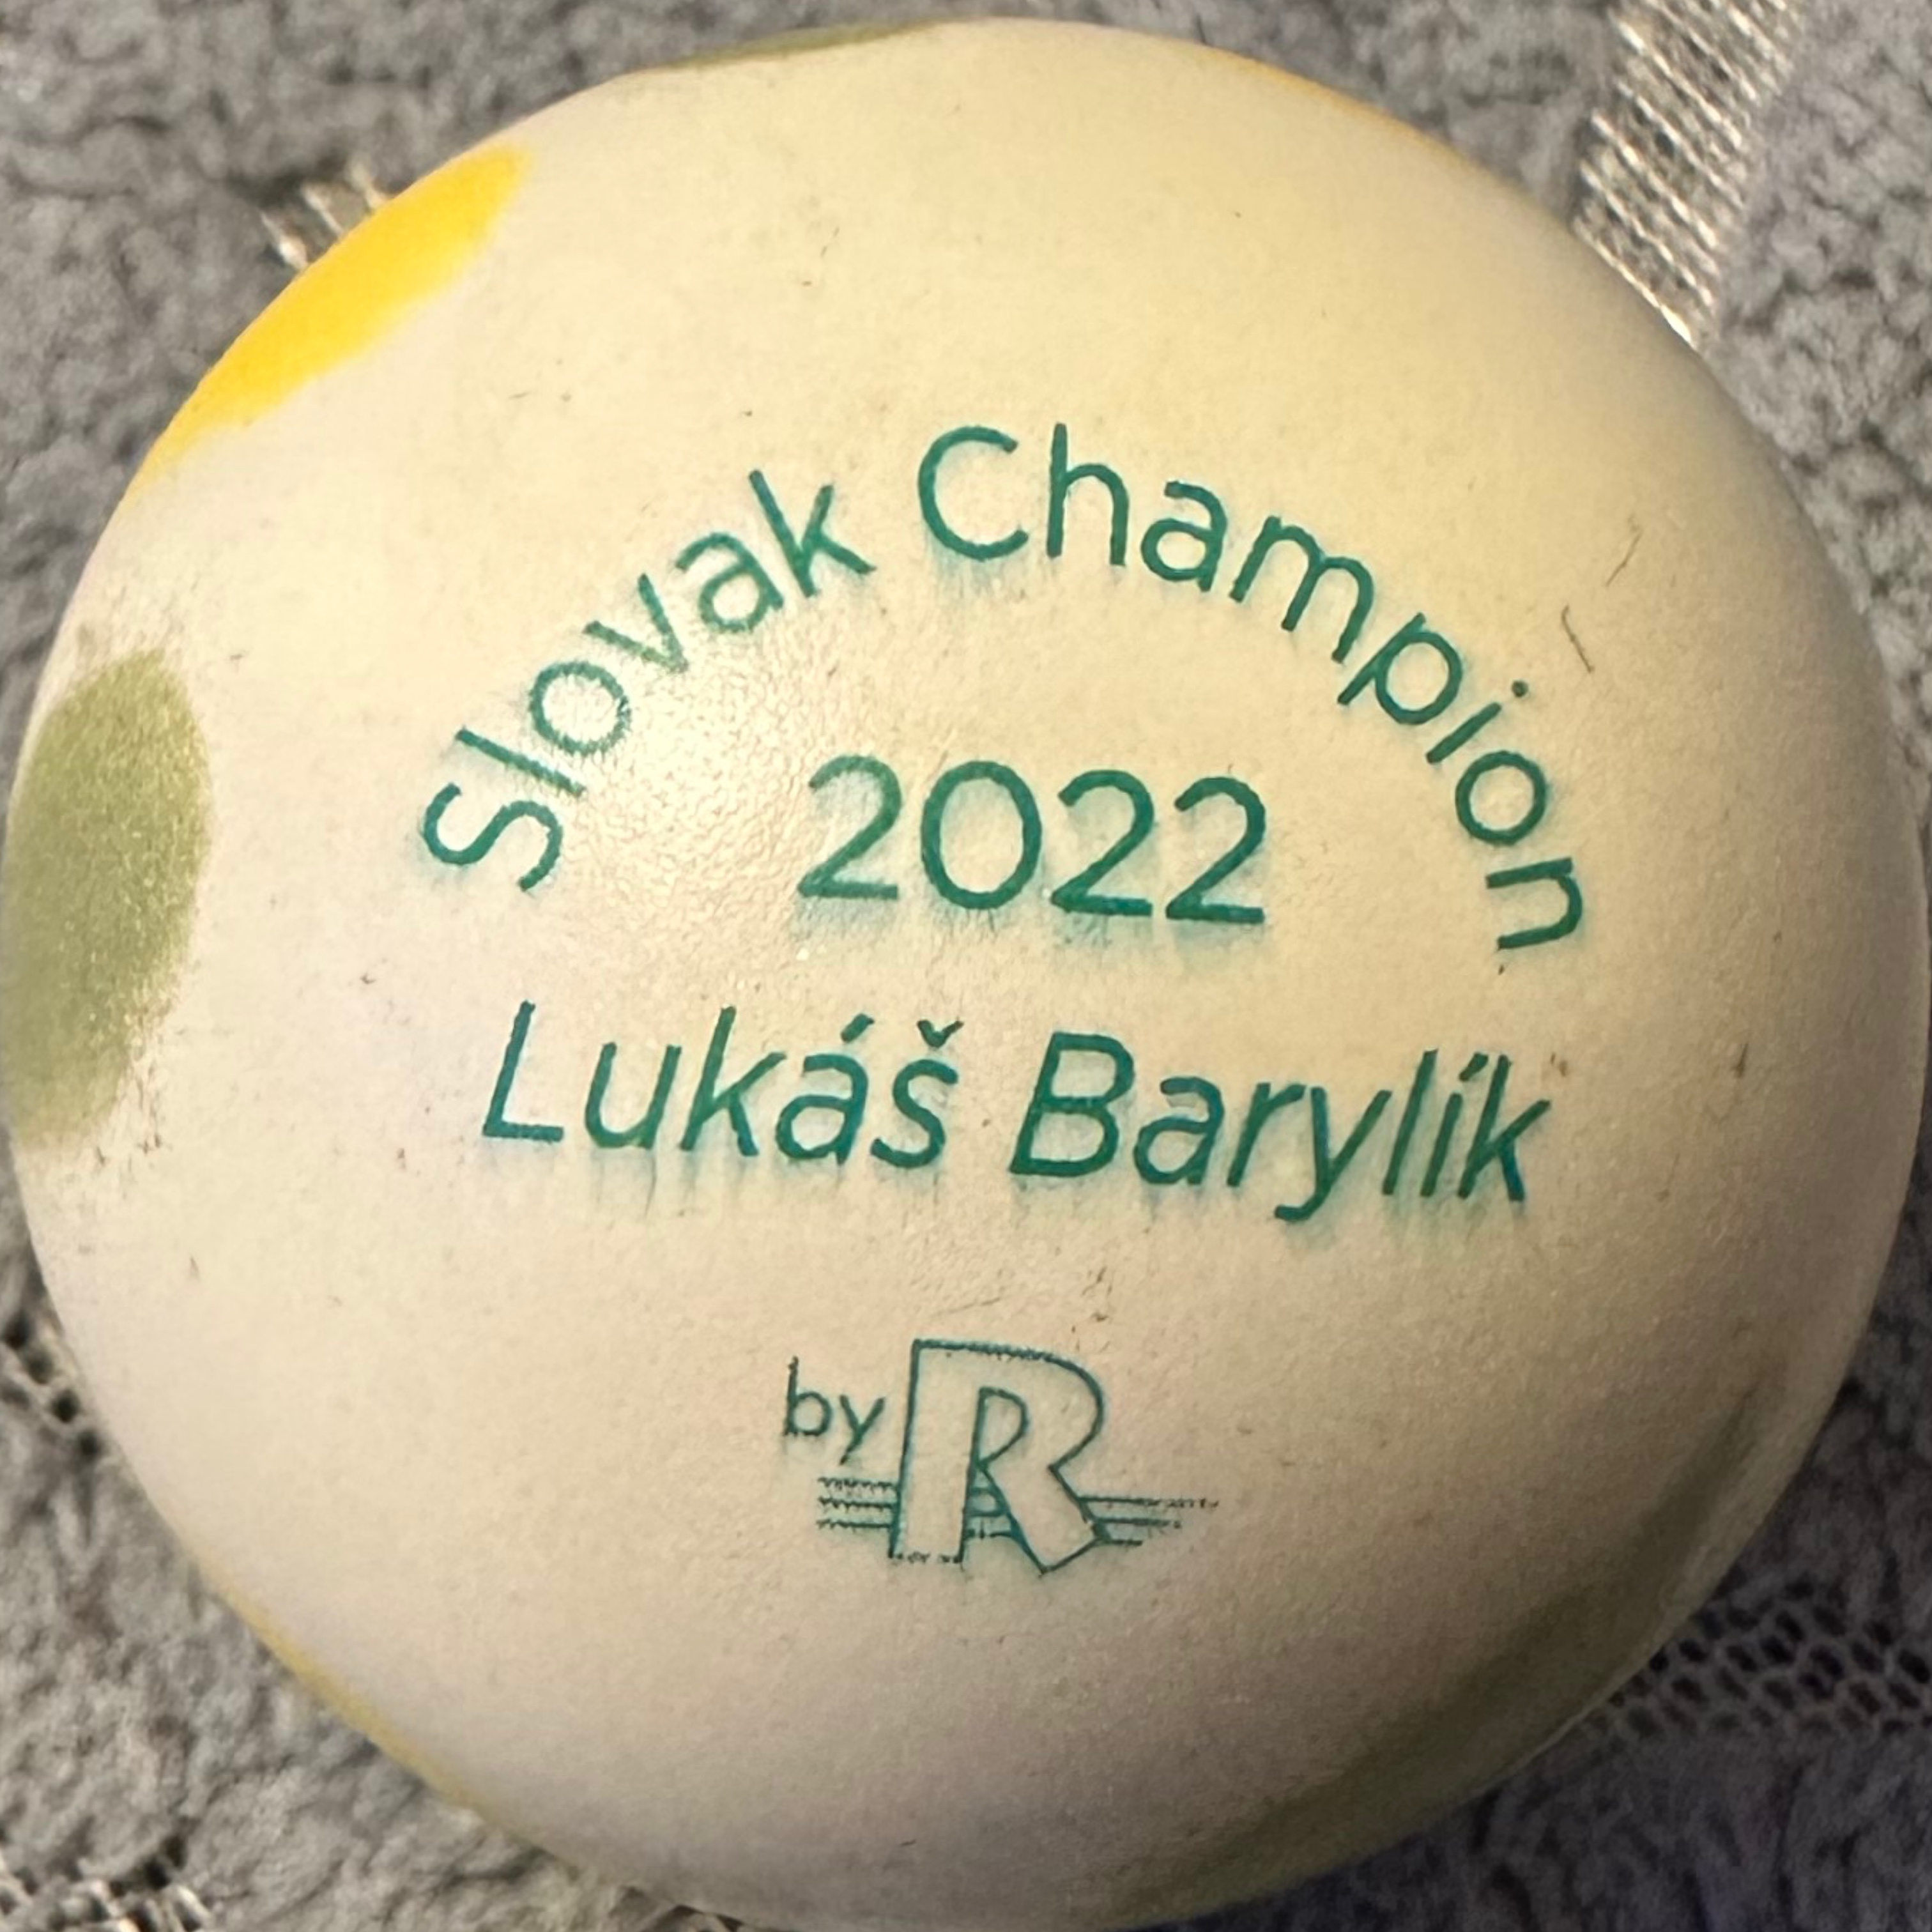 slovak_champion_2022_lukáš_barylík_k.jpg